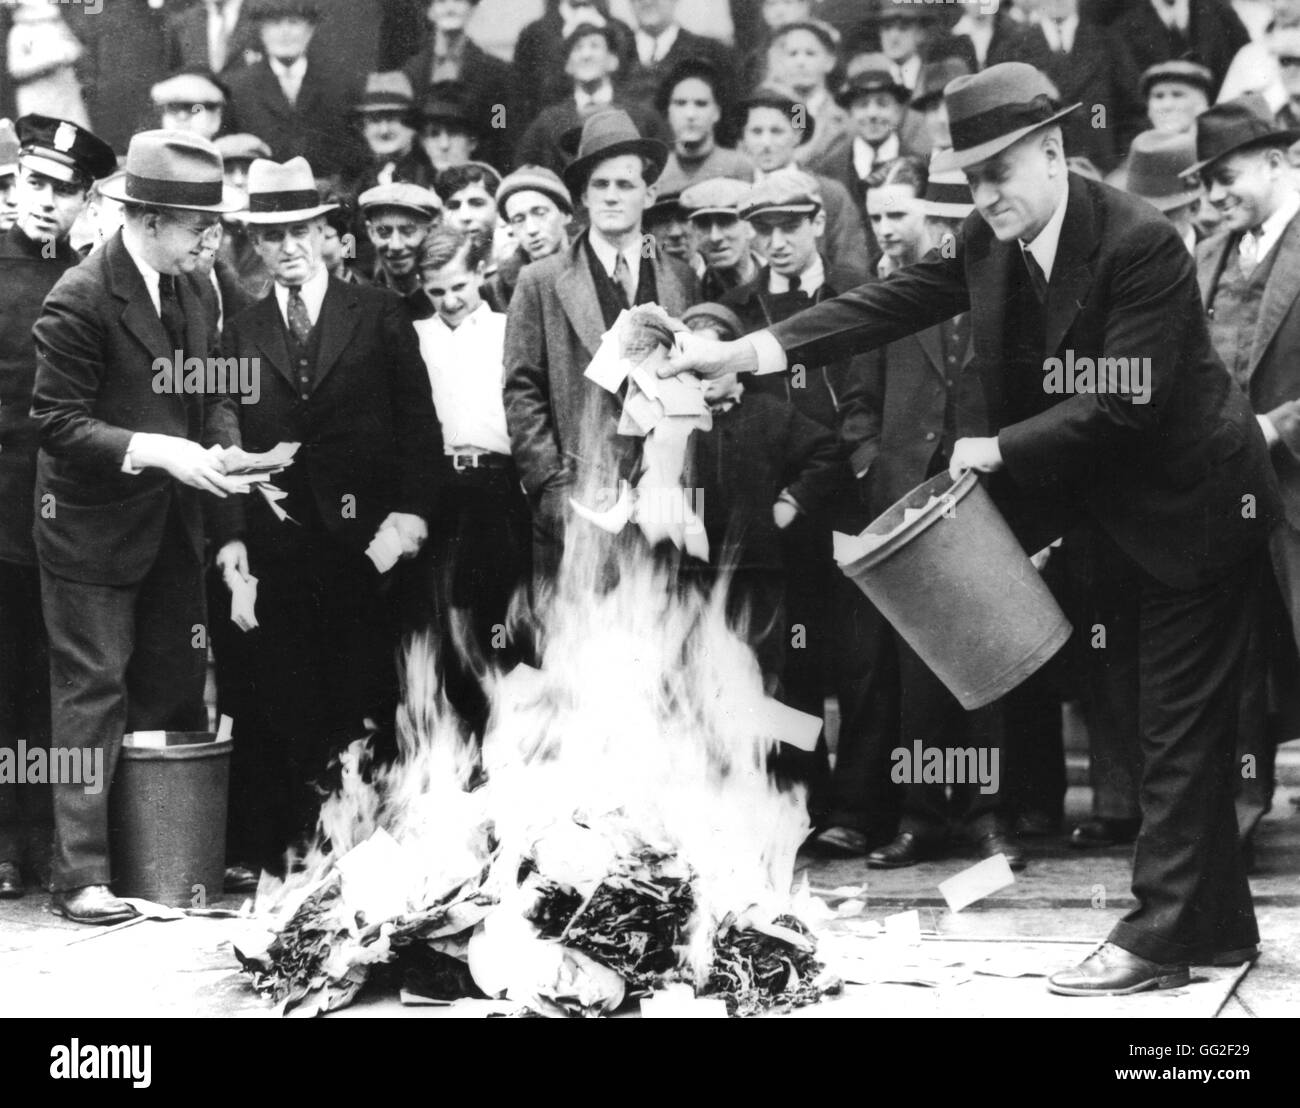 Città uomo del Consiglio, il sig. Barlow, e segretario del Tesoro, il sig. Jil Martin, bruciando 100.000 dollari di 'scrip denaro" (dopo le banche chiusura) aprile 1933 Stati Uniti archivi nazionali. Washington Foto Stock